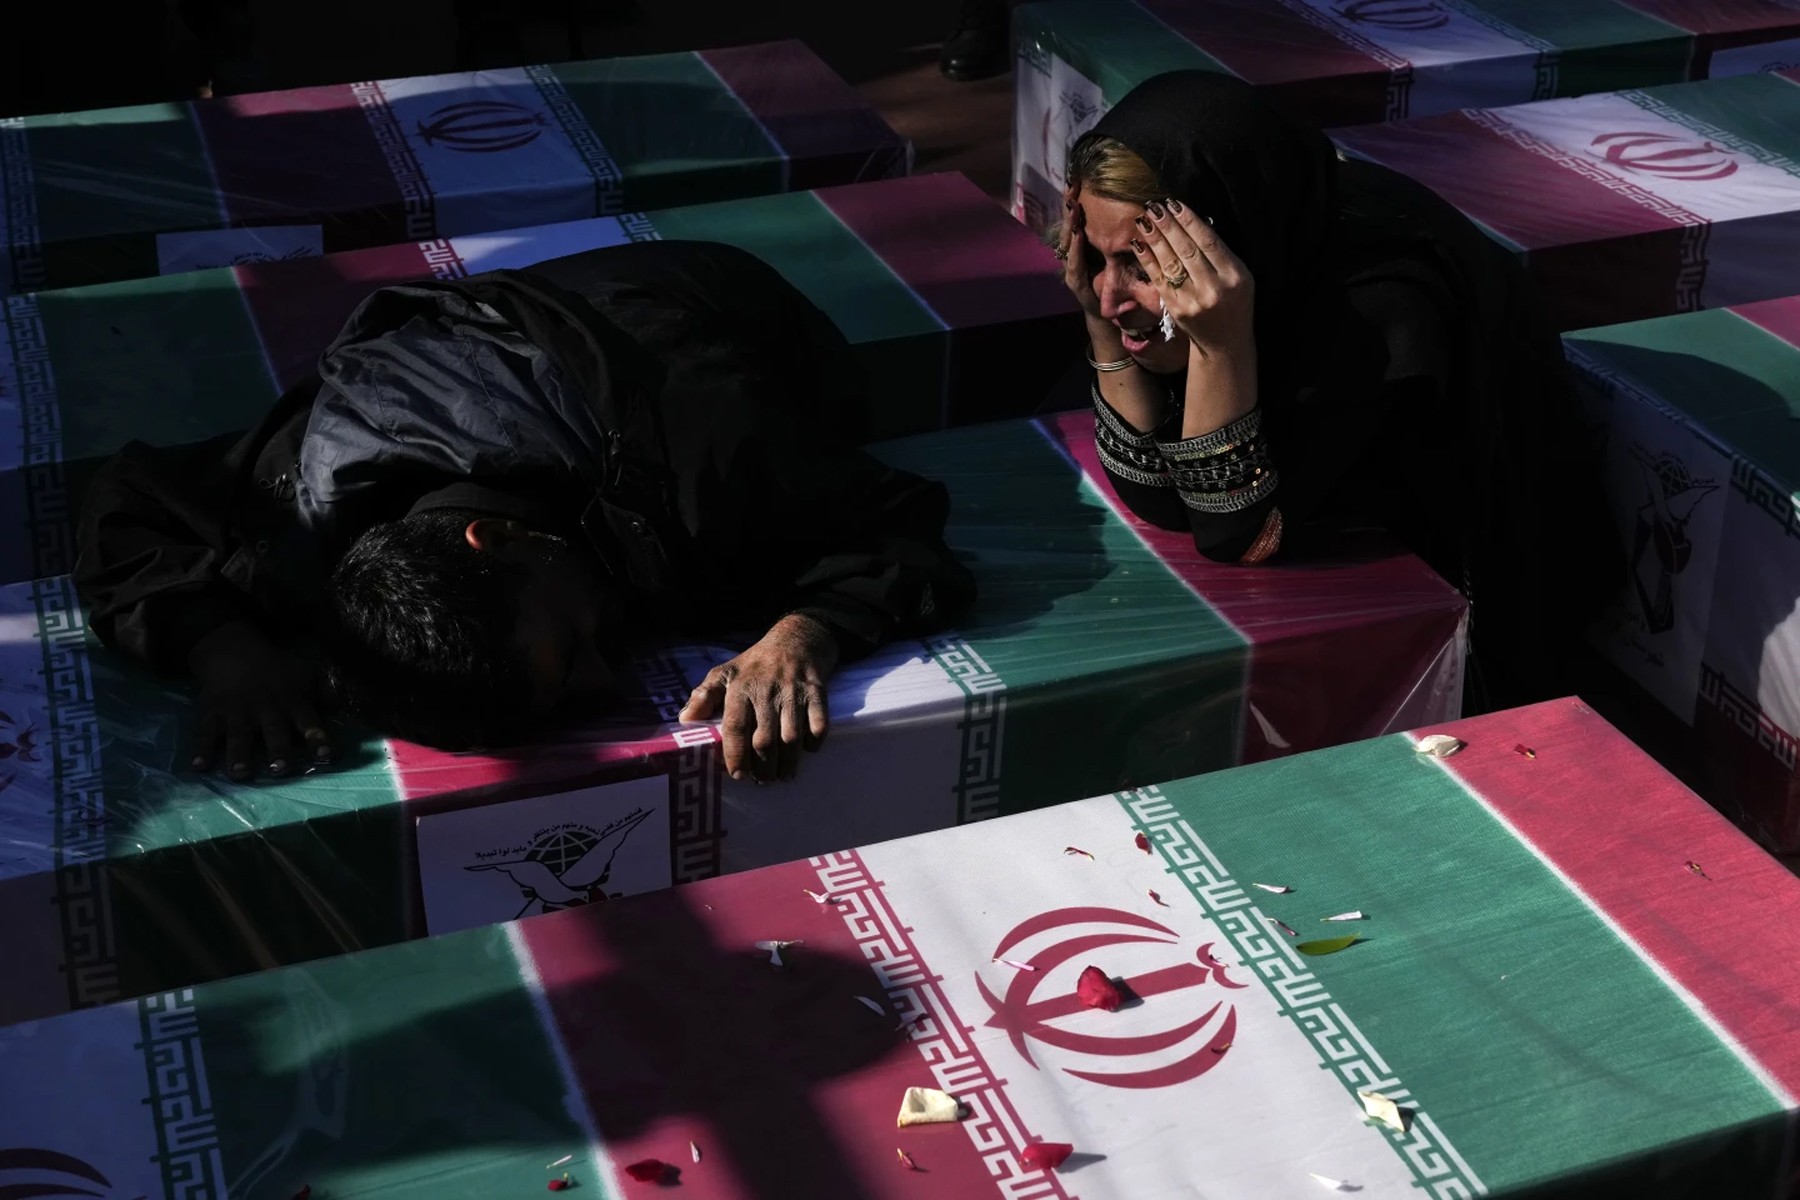 ایران عزادار کشته شدگان انفجارهای انتحاری داعش است